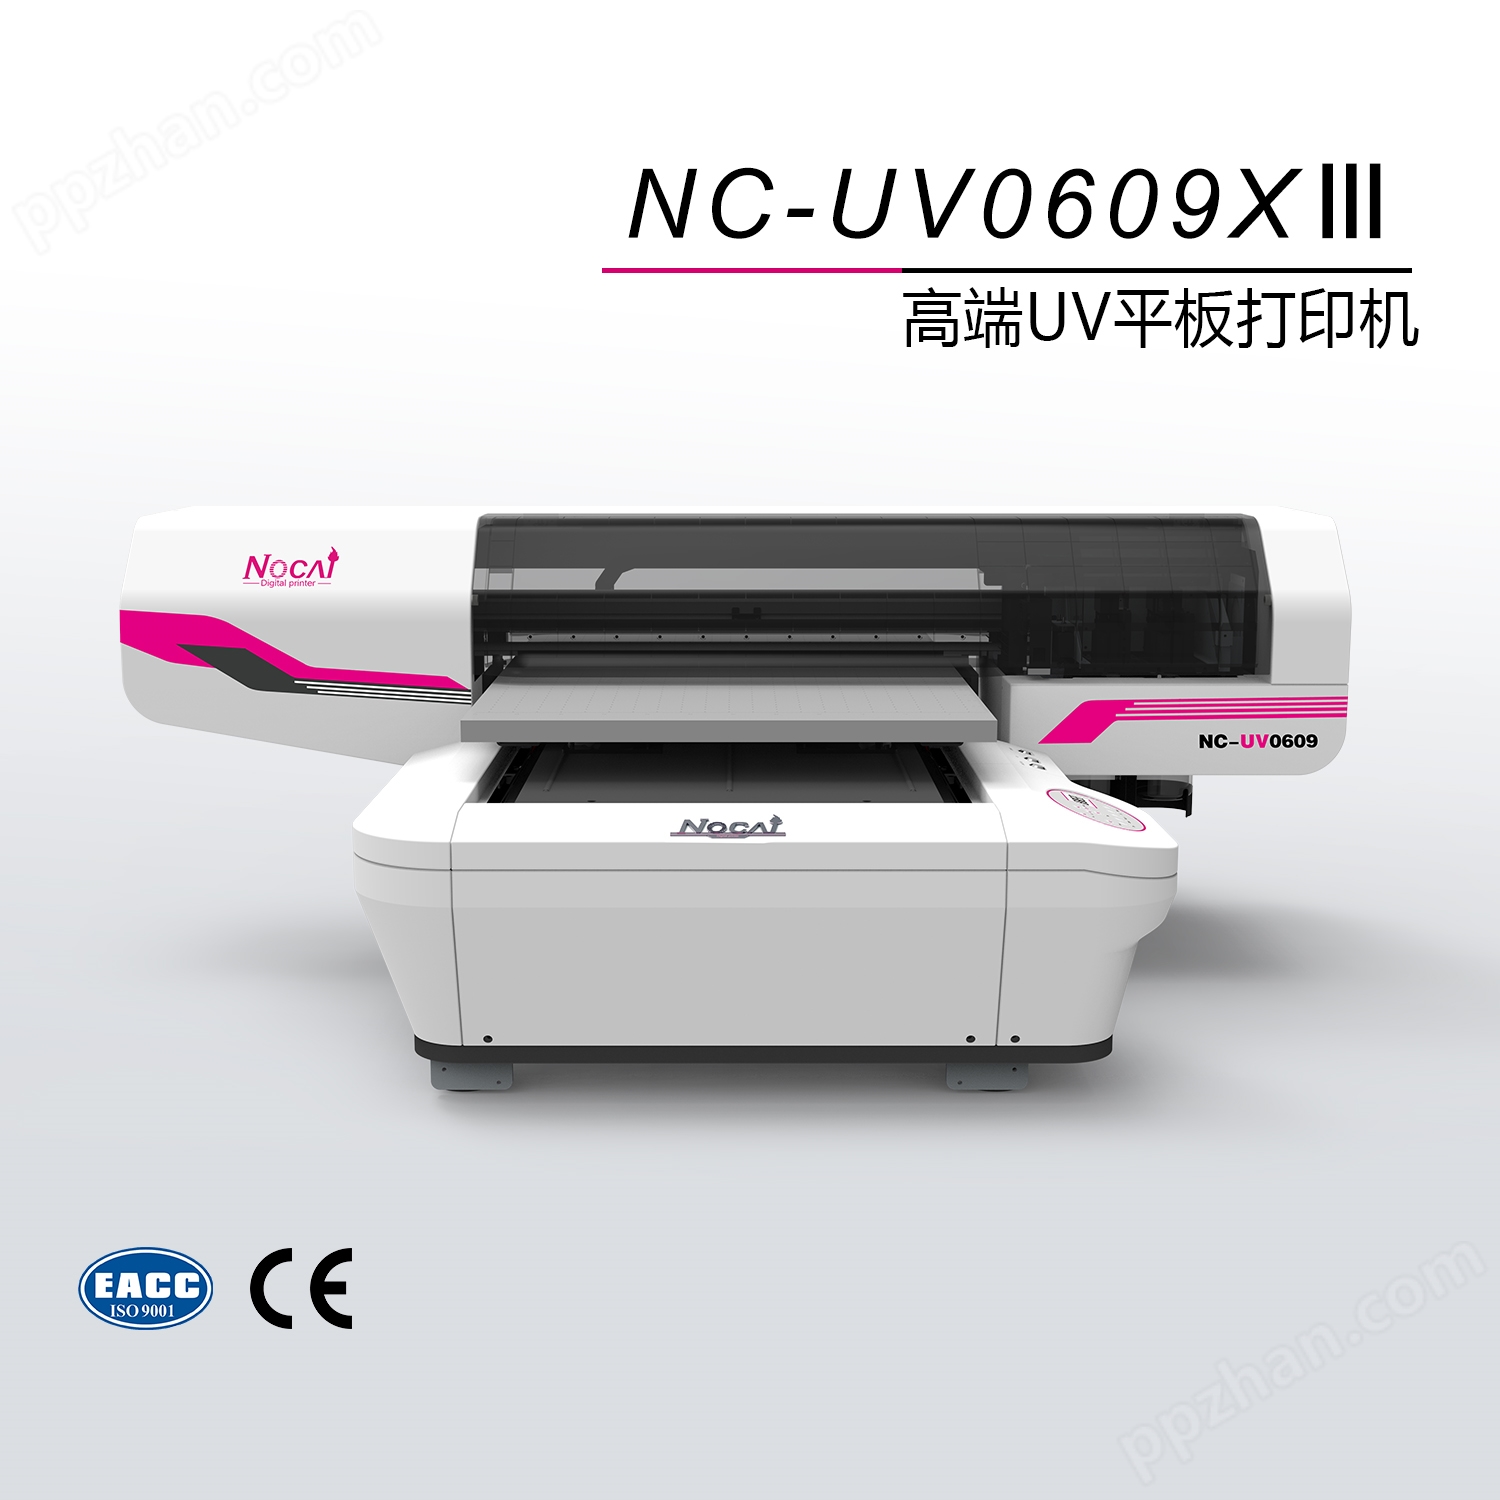 NC-UV0609XII